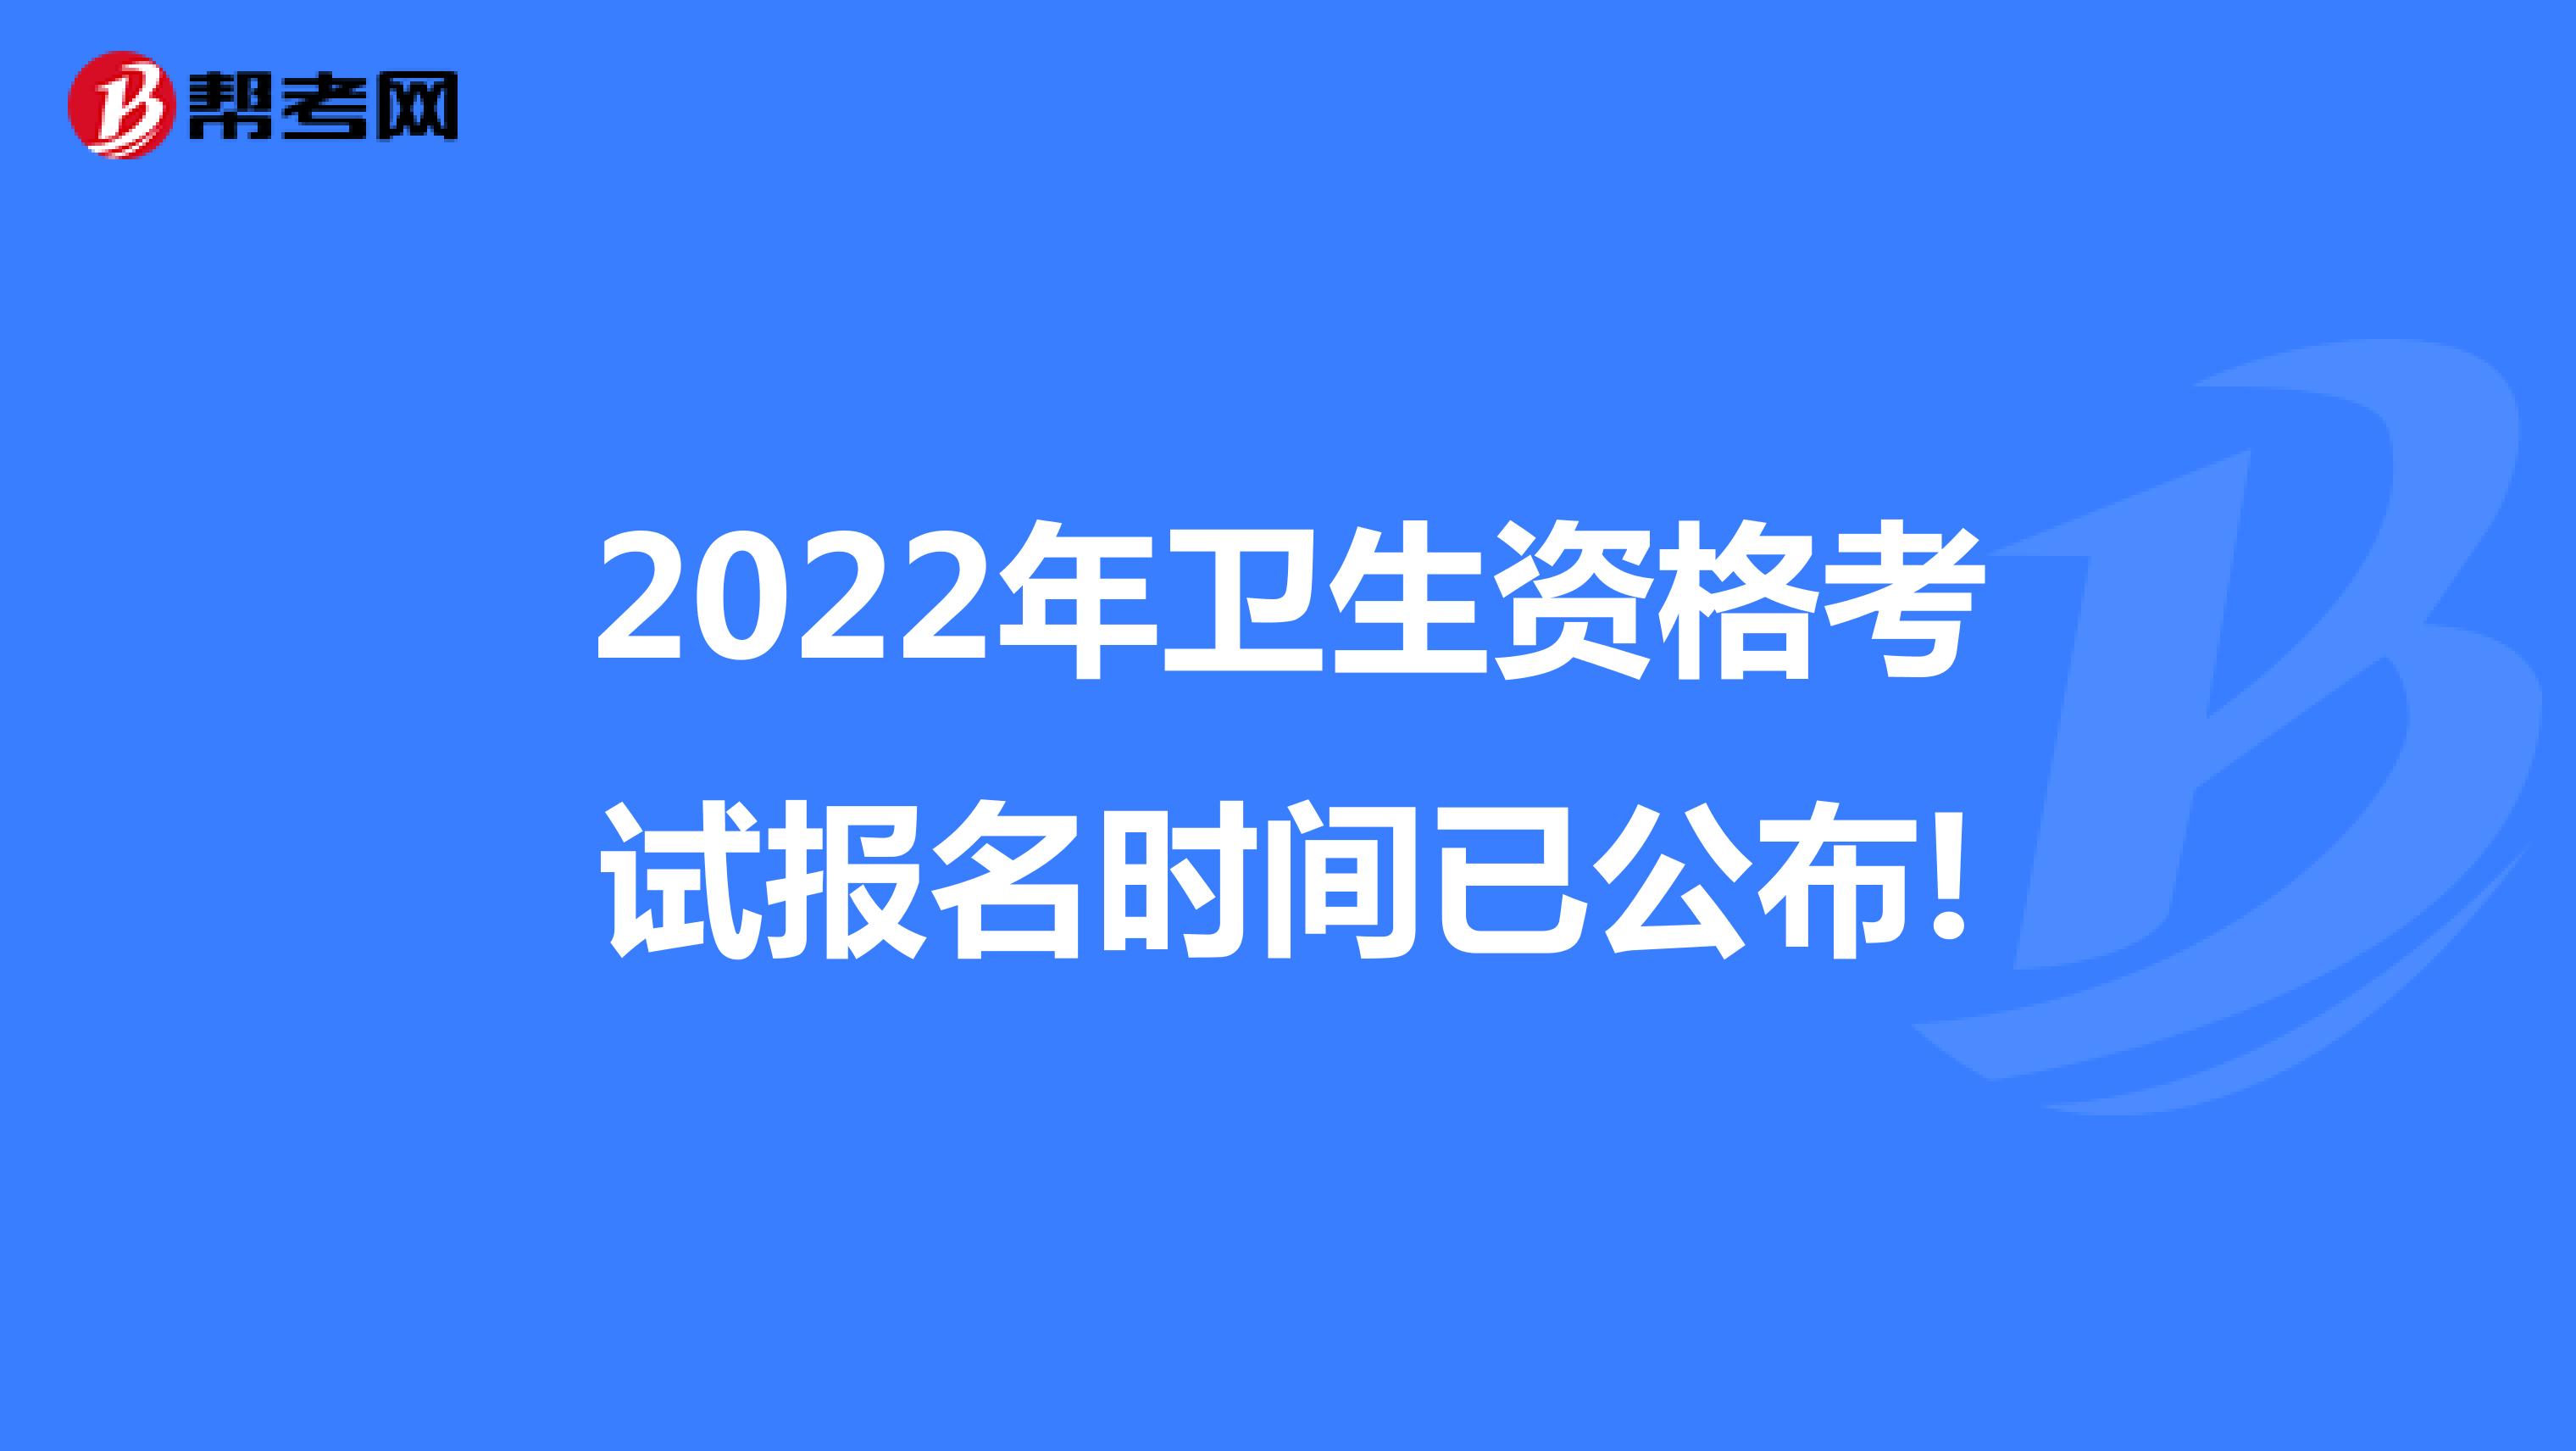 2022年卫生资格考试报名时间已公布!